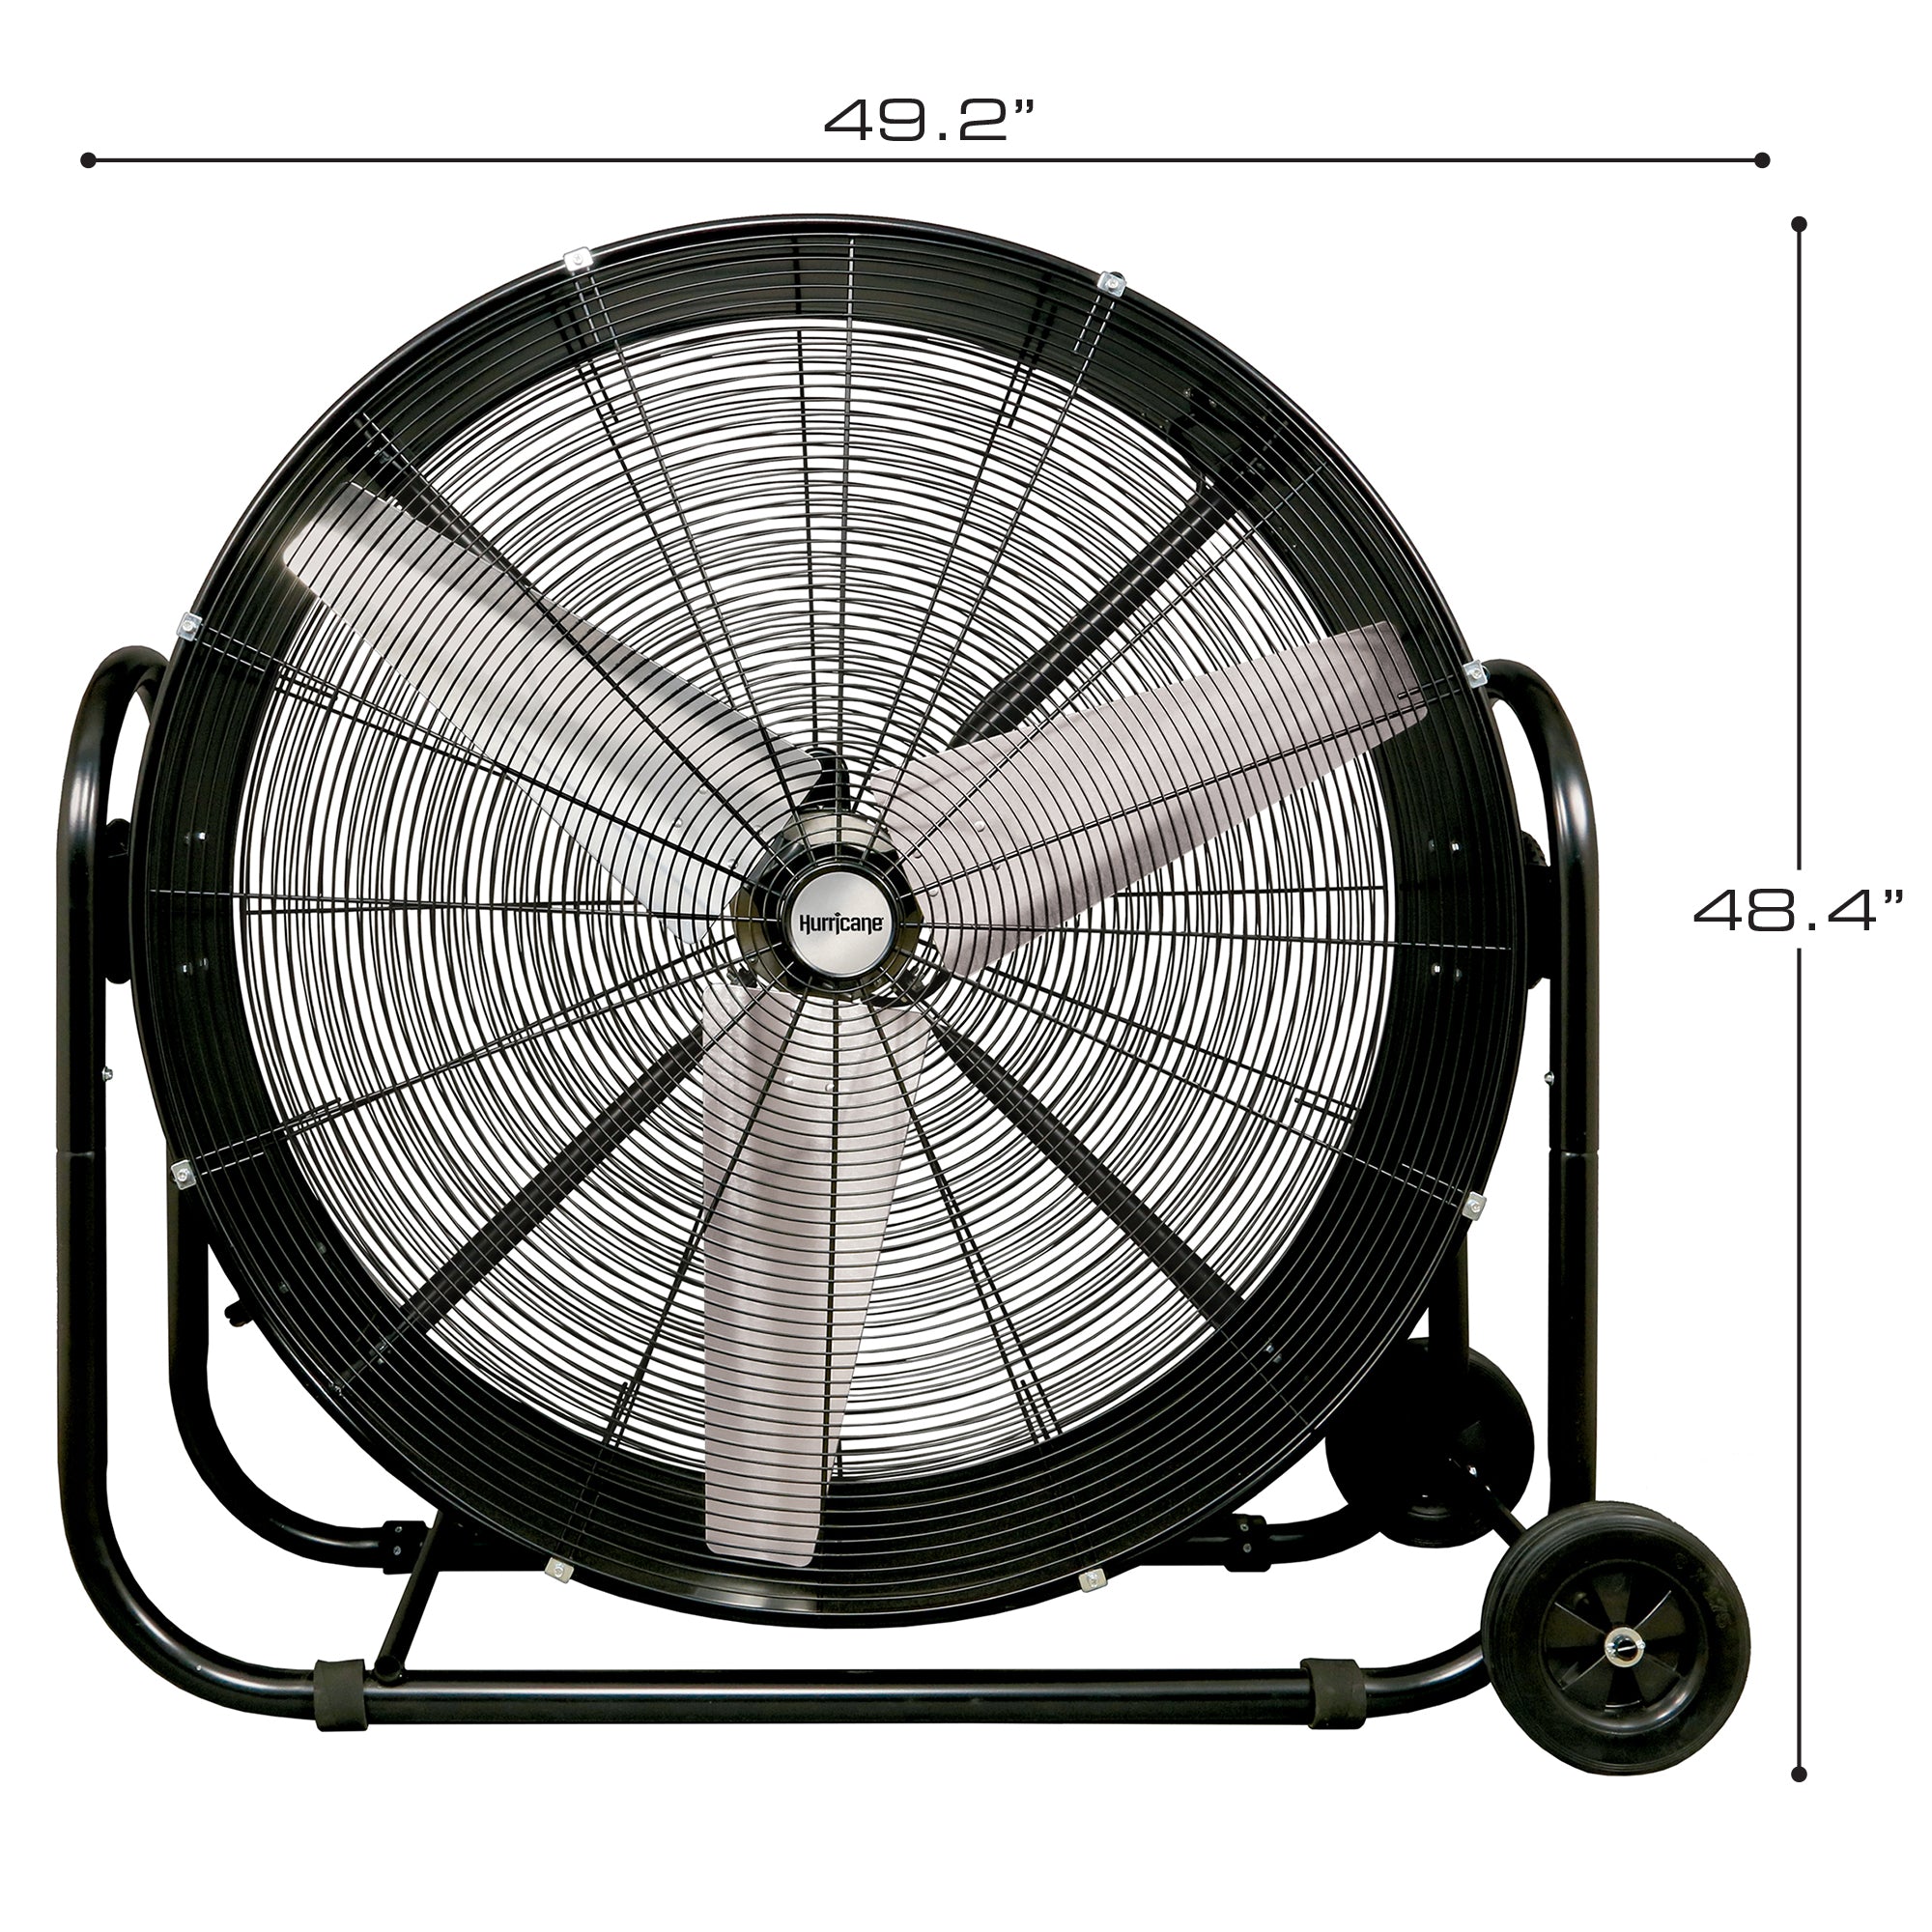 Hurricane® Pro Heavy Duty Adjustable Tilt Drum Fan 42 In - HGC736488